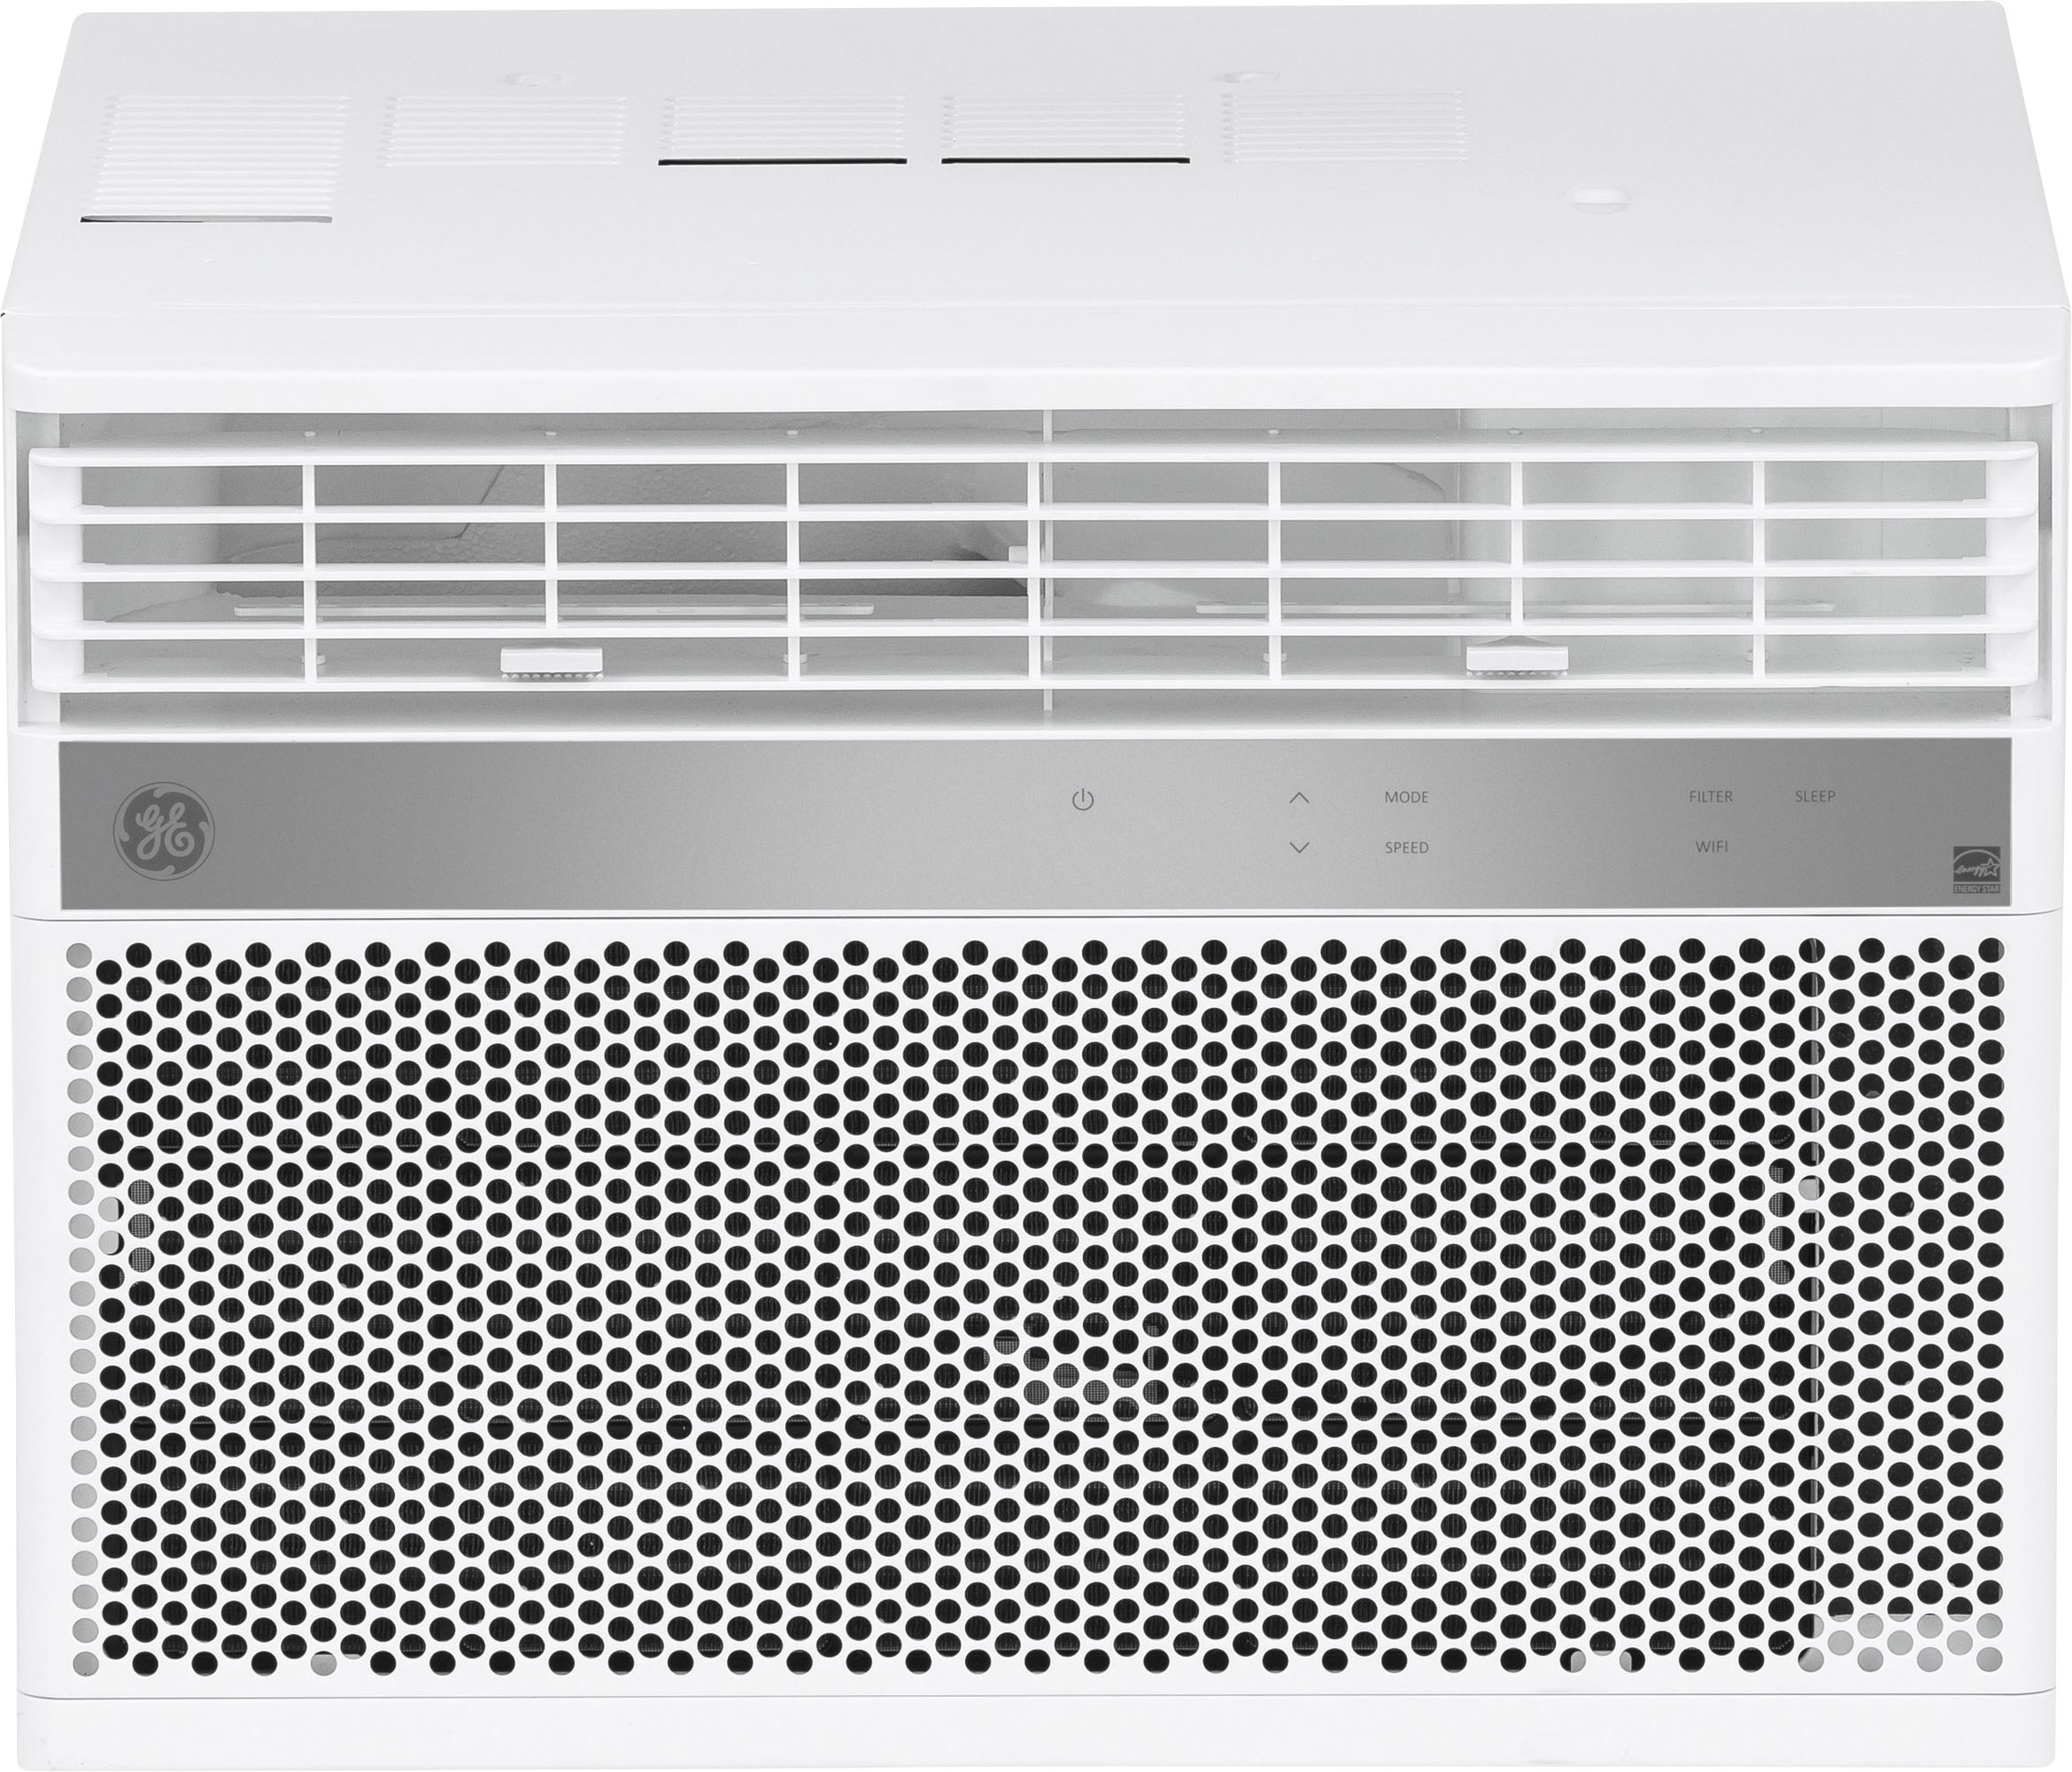 14000 btu air conditioner square footage